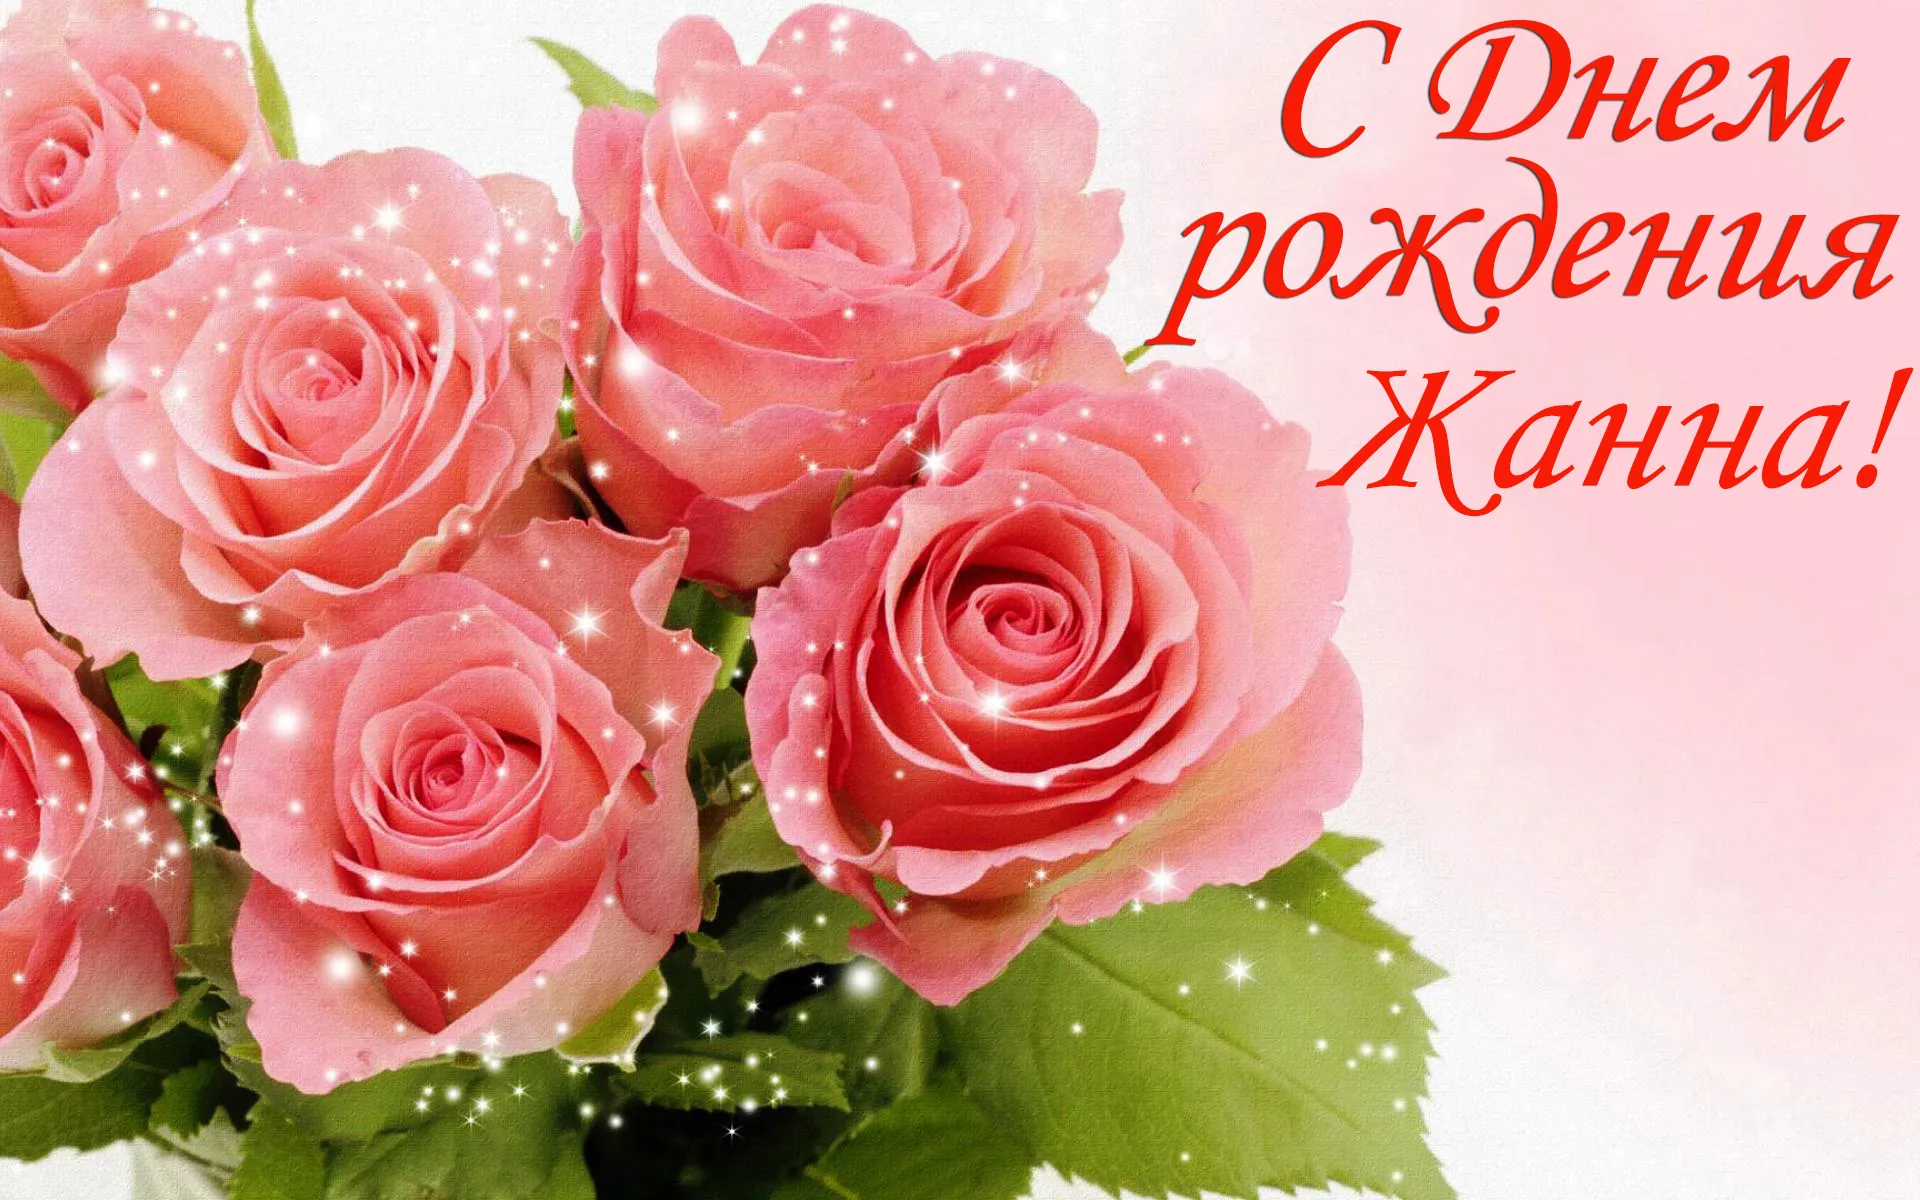 Поздравление с днем рождения жанне открытка. Розы поздравление. Розовые розы. Открытка цветы. Открытки с цветами красивые.